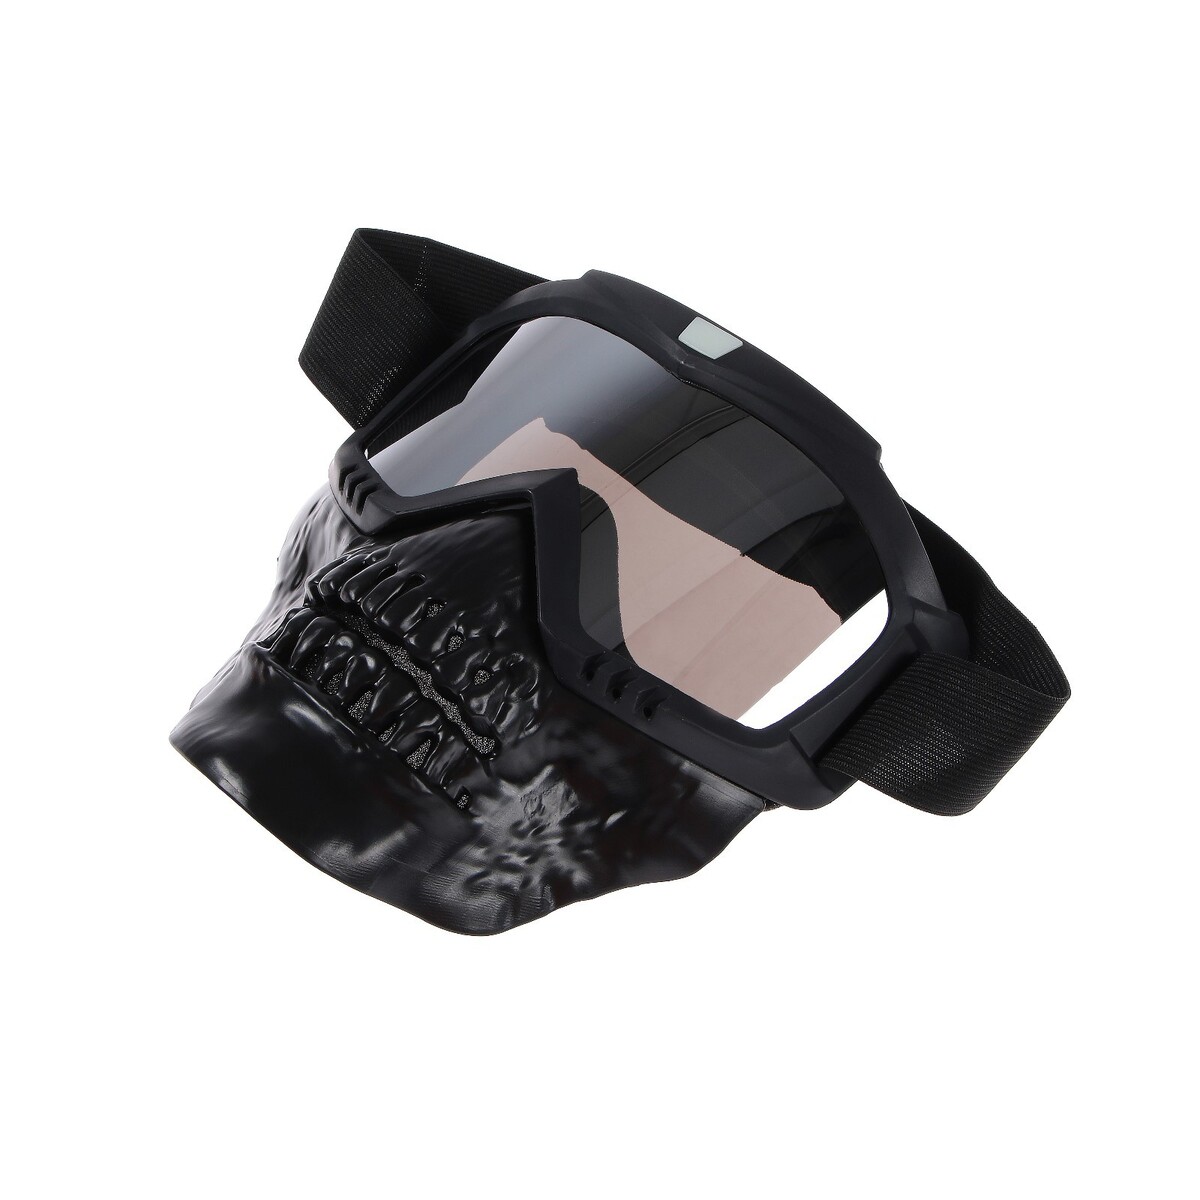 Очки-маска для езды на мототехнике, разборные, визор хром, цвет черный очки маска для езды на мототехнике разборные визор прозрачный